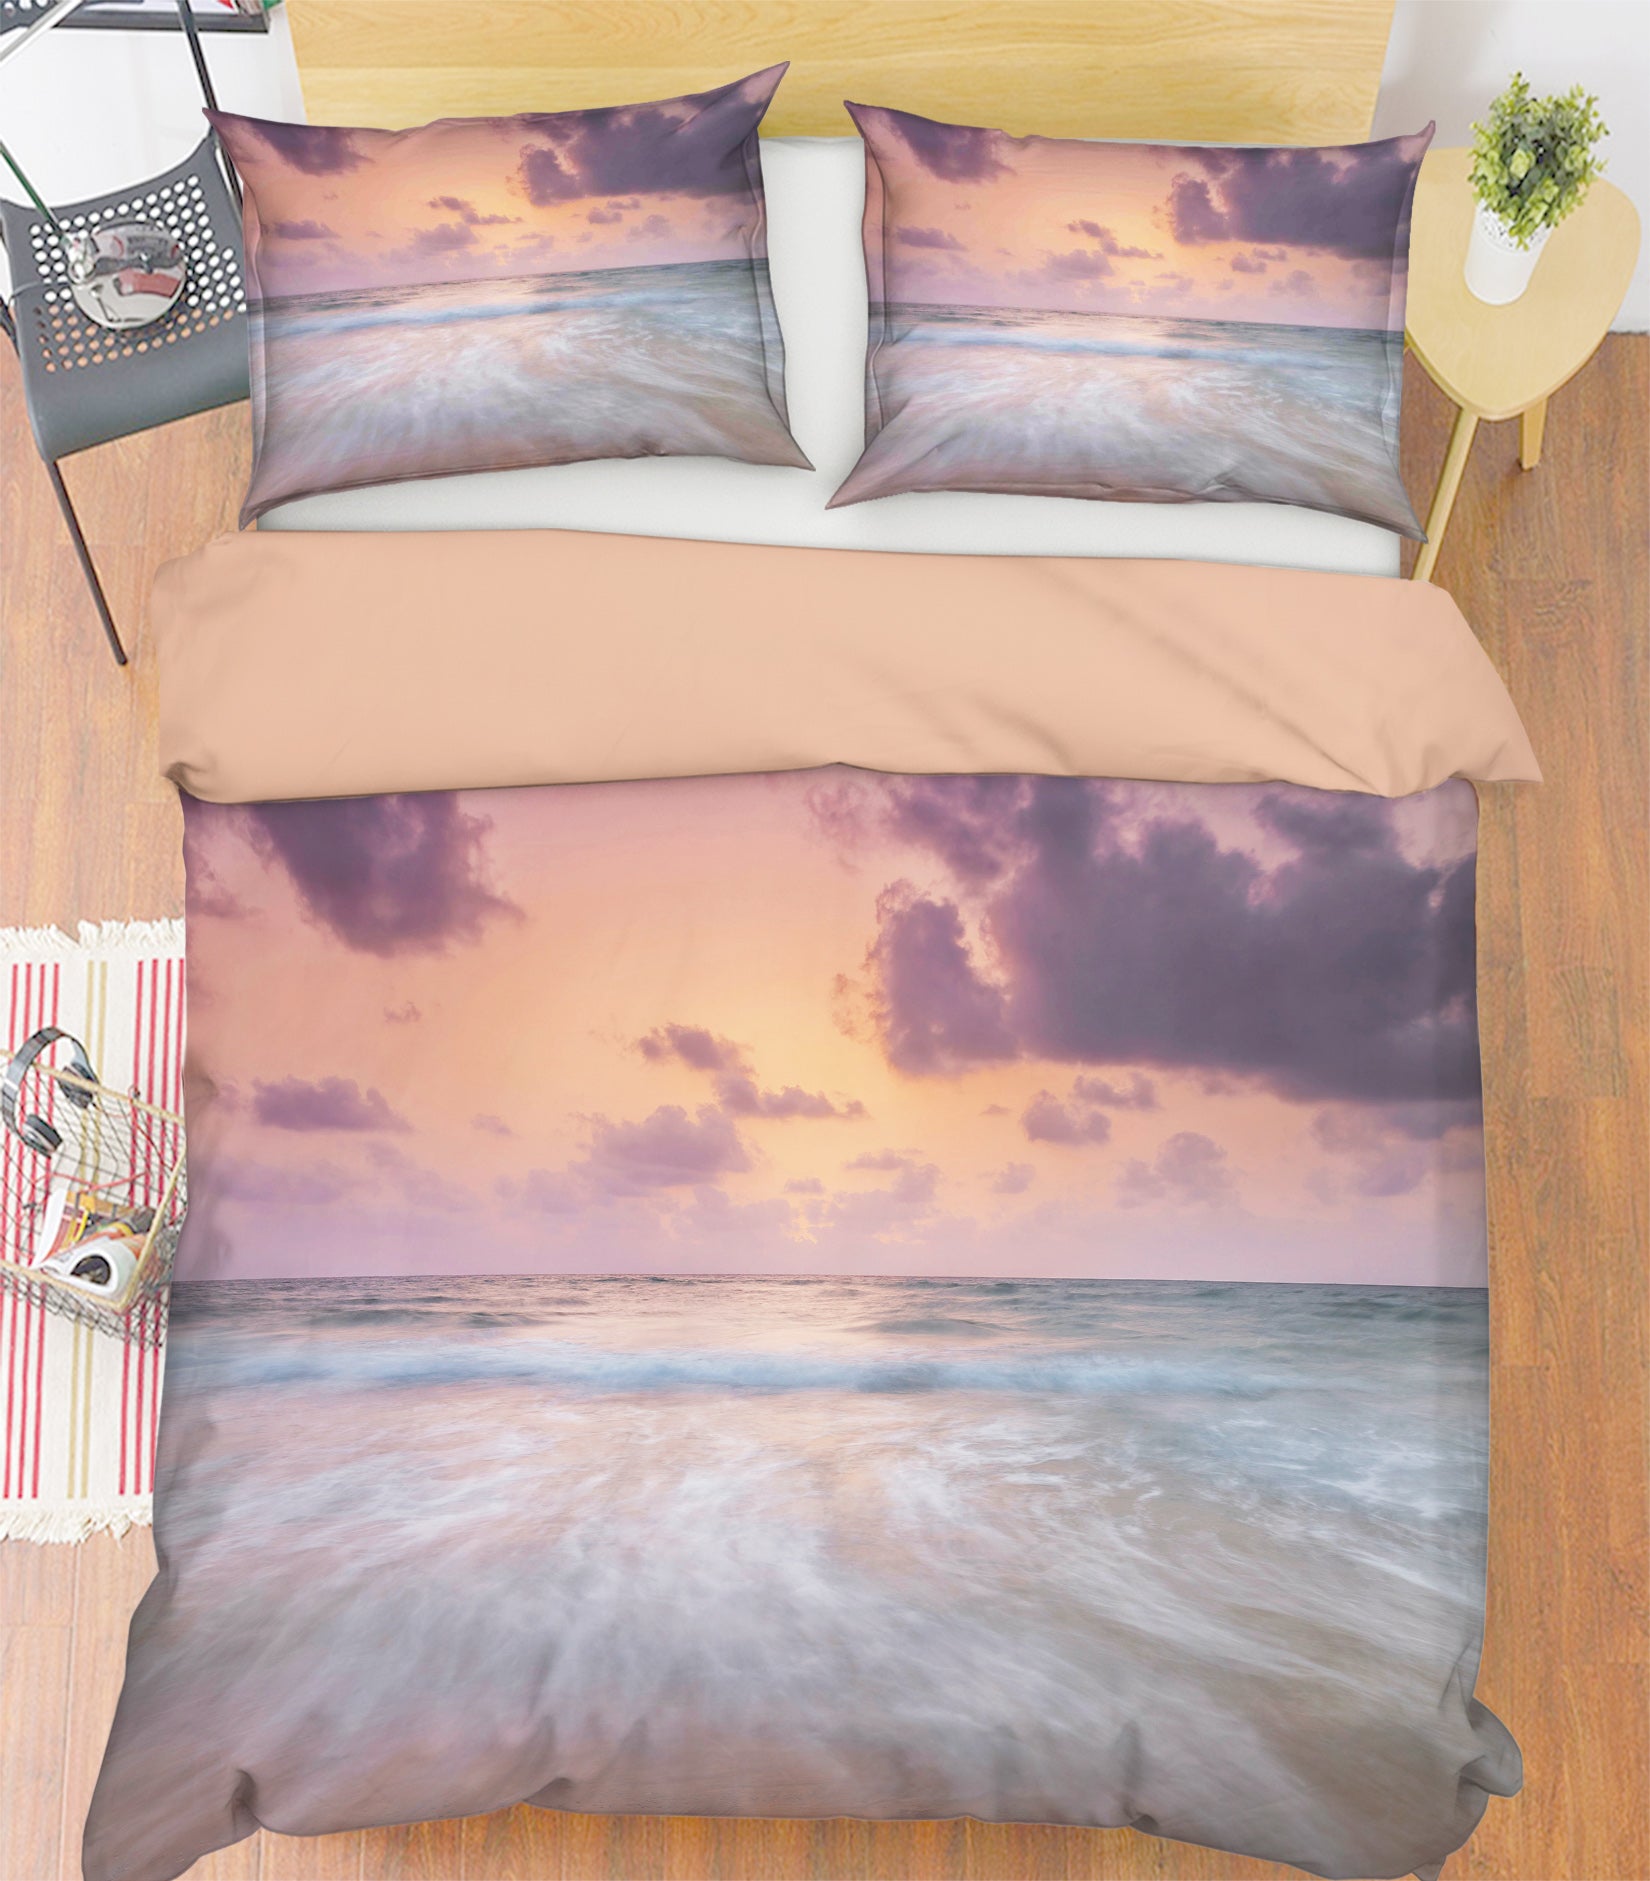 3D Beach 8631 Assaf Frank Bedding Bed Pillowcases Quilt